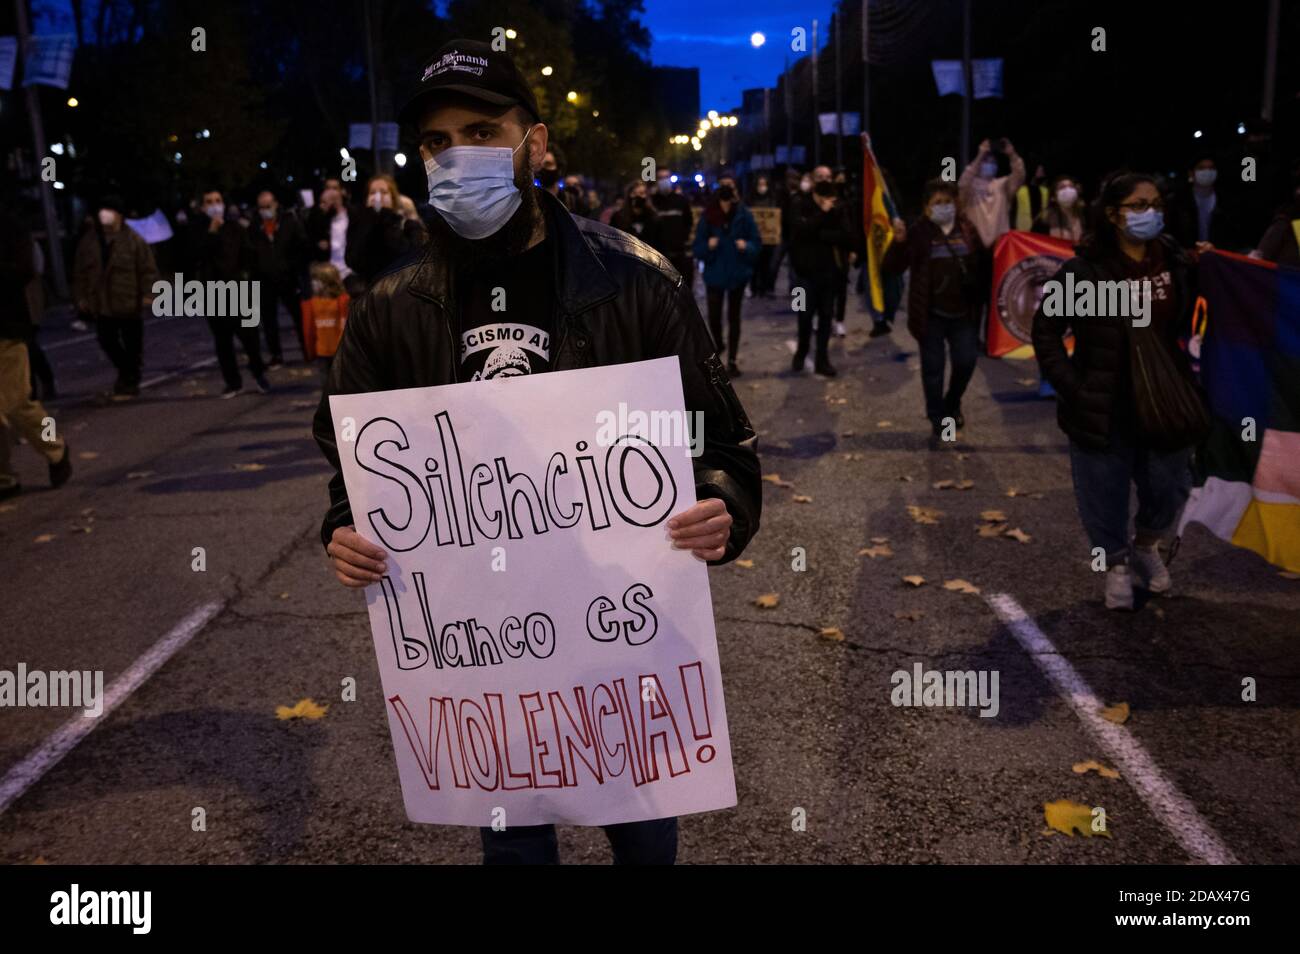 Madrid, Espagne. 15 novembre 2020. Un homme portant un écriteau portant la mention « la science blanche, c'est la violence » lors d'une manifestation contre le racisme et la xénophobie. Credit: Marcos del Mazo/Alay Live News Banque D'Images